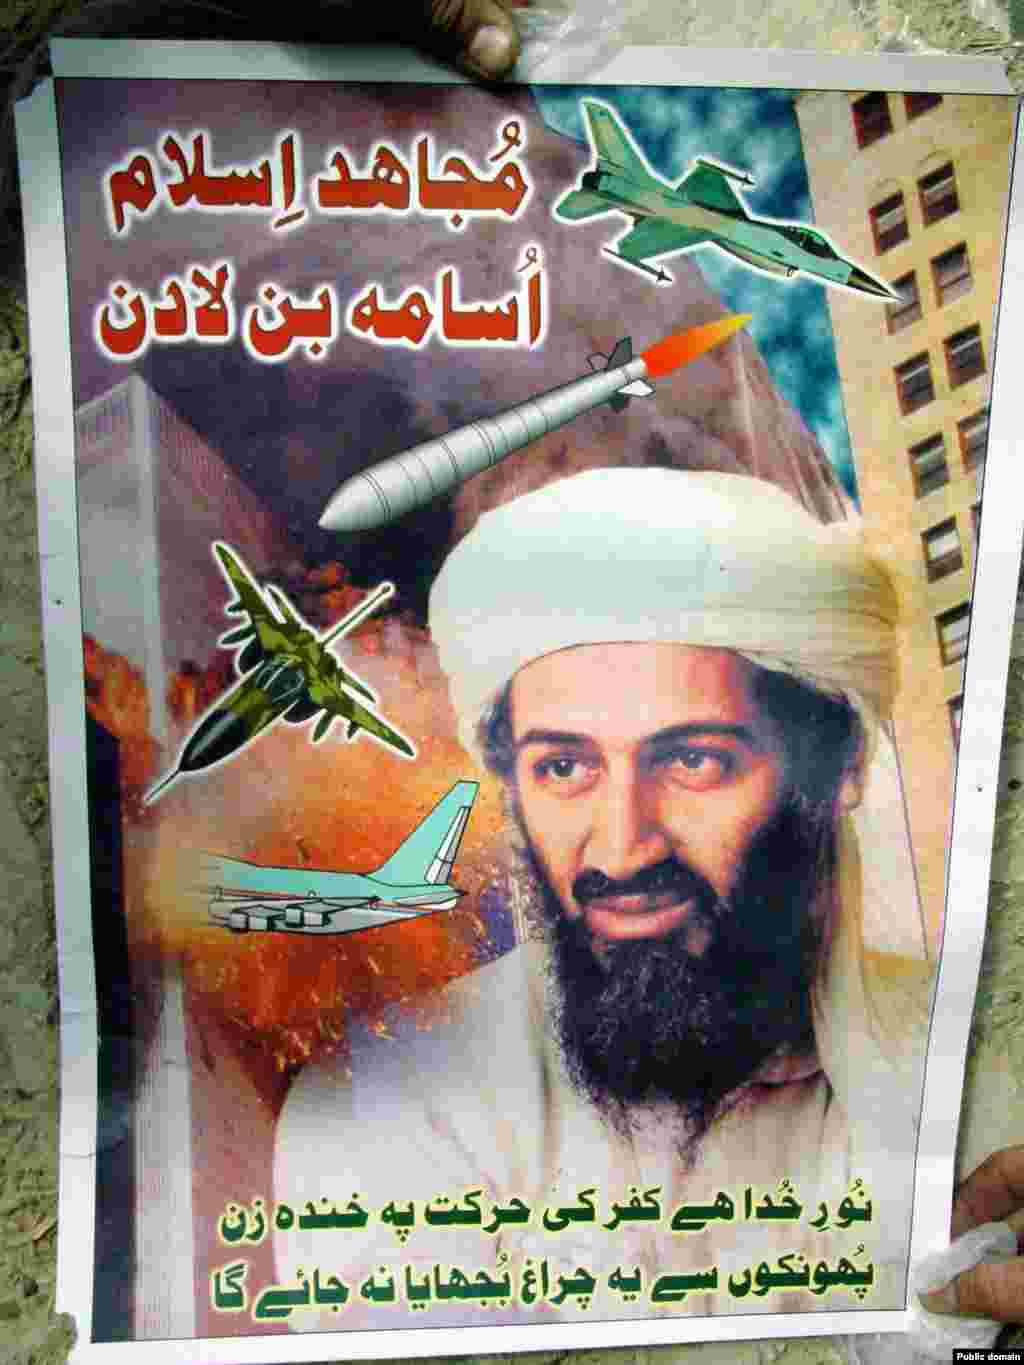 Герой №1 немыслим без антигероя. Но для миллионов мусульман именно Усама бин Ладен символизирует надежды на лучшее будущее. Просчеты в "войне с террором" заметно расширили число поклонников неуловимого саудовца. Бин Ладен с постера джихадистов